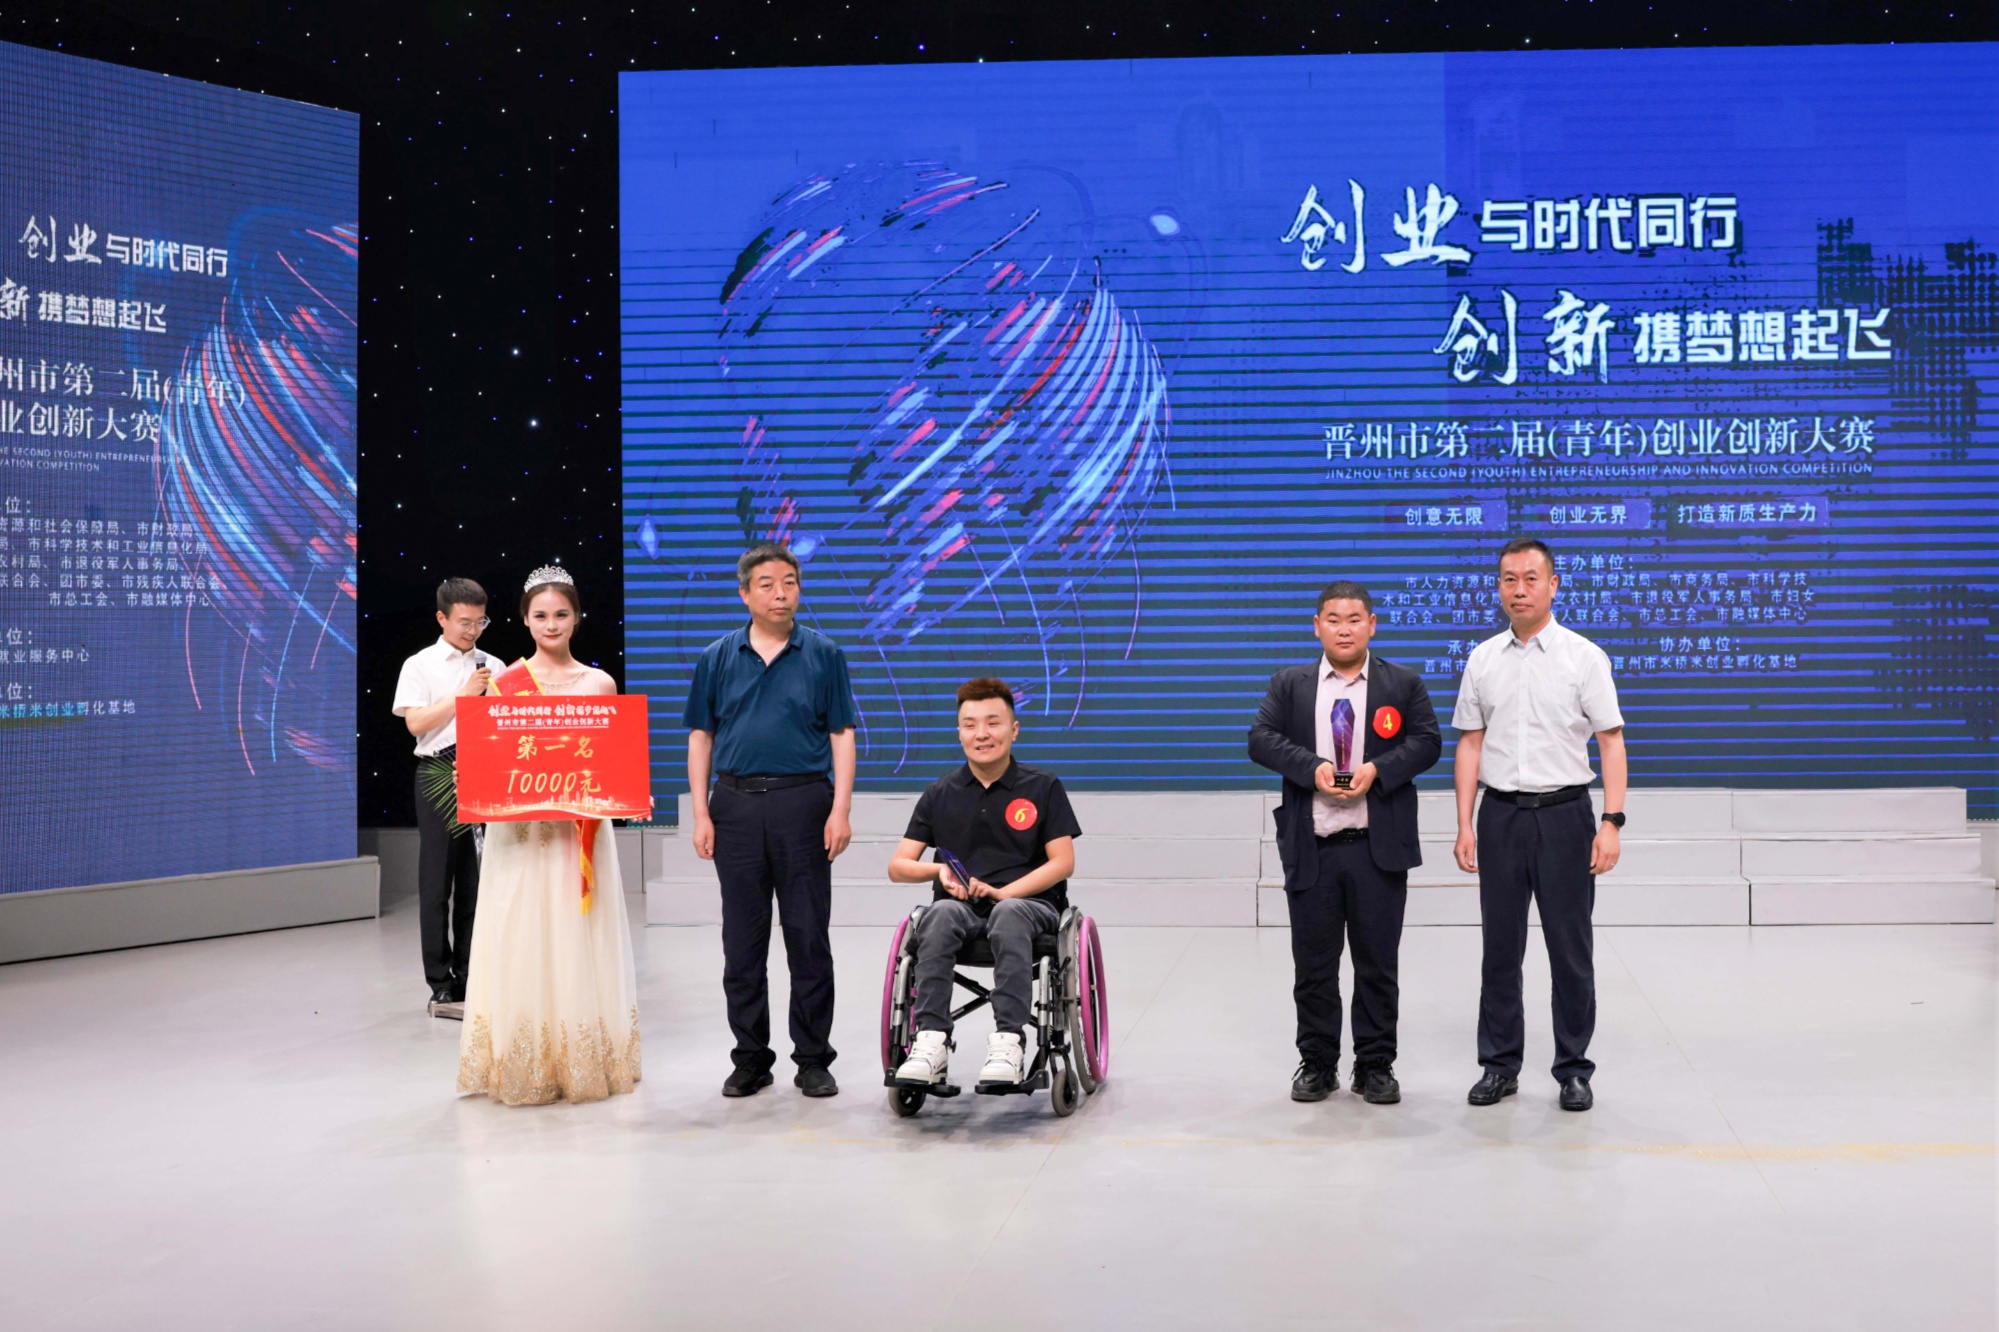 近日,河北省晋州市第二届(青年)创业创新大赛总决赛,在该市融媒体中心